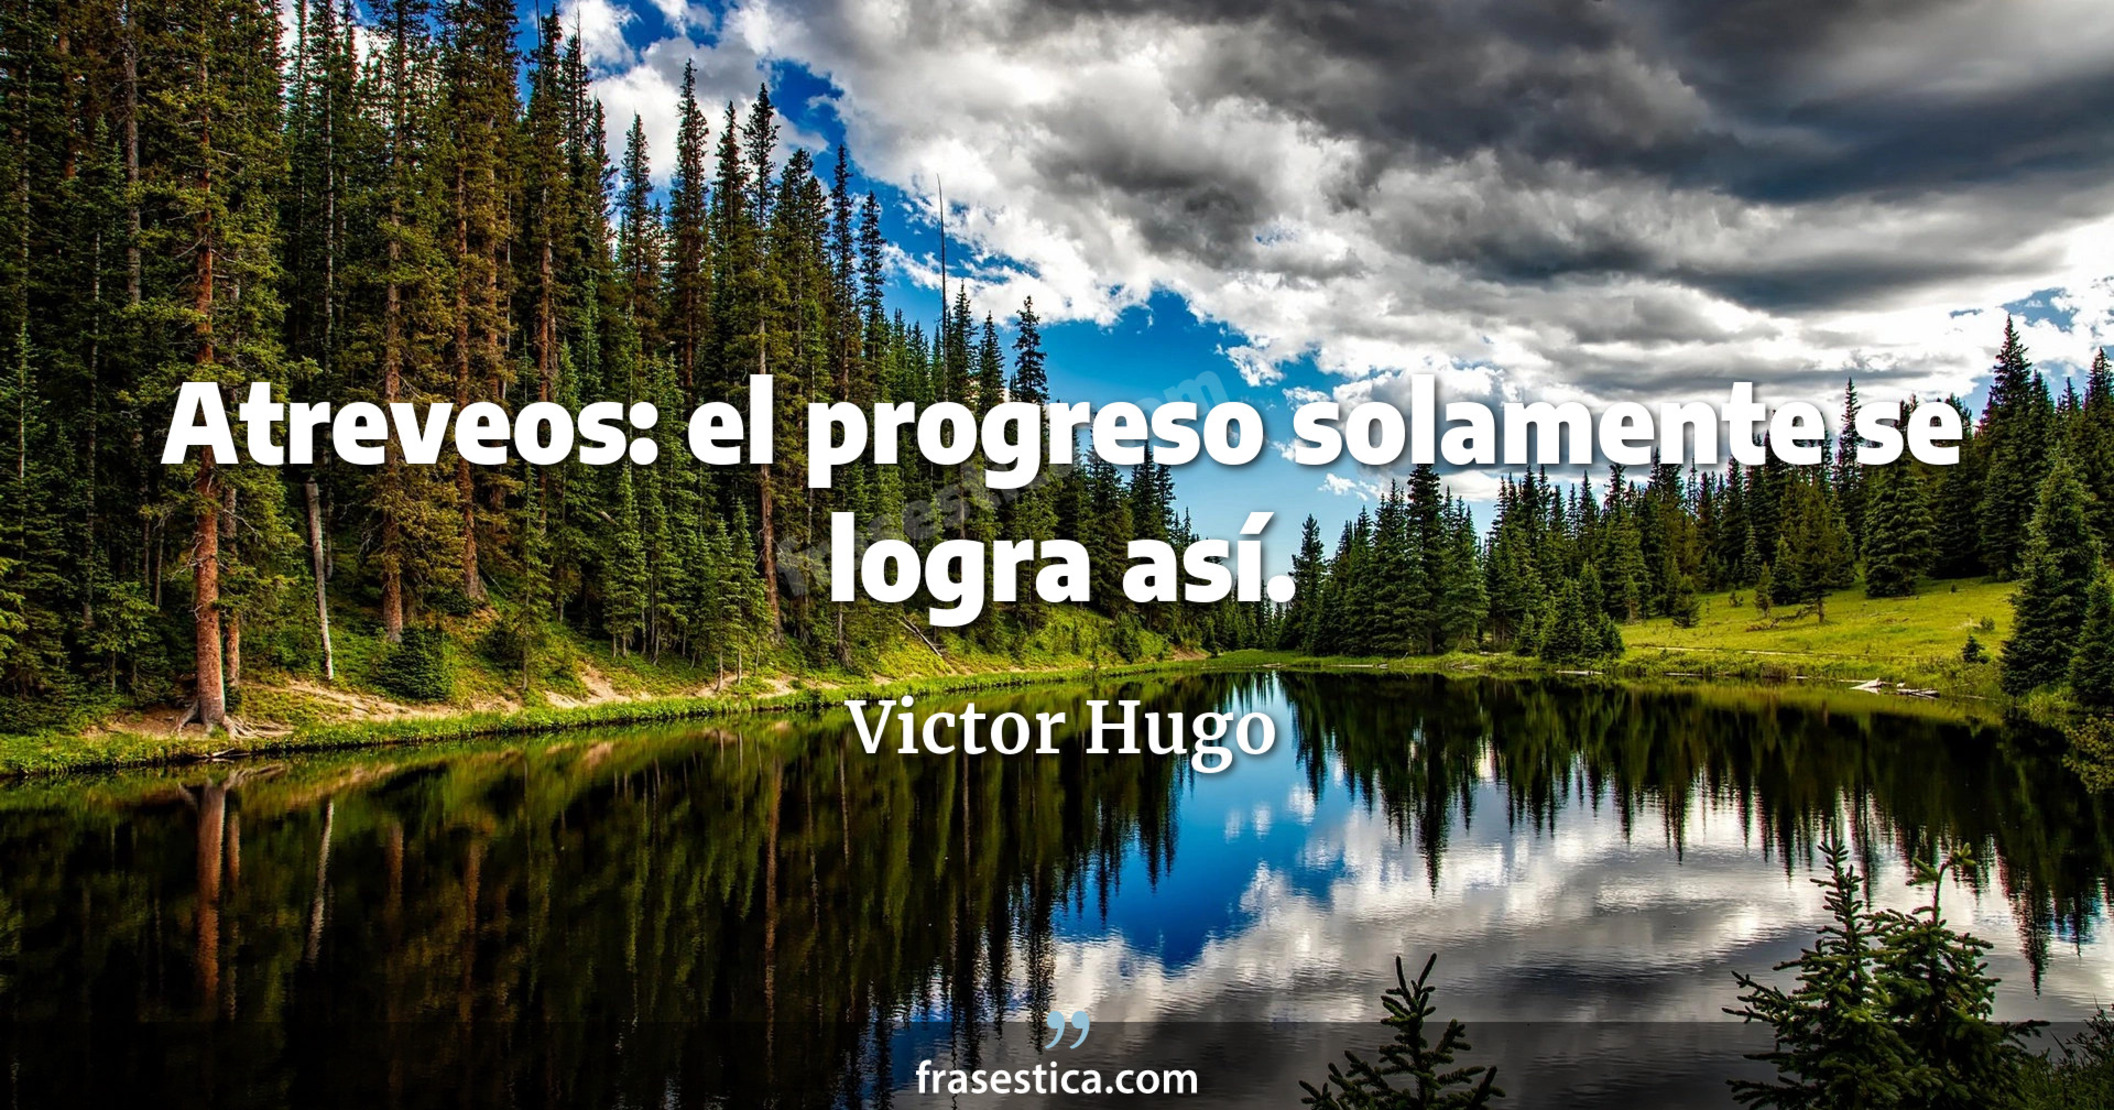 Atreveos: el progreso solamente se logra así. - Victor Hugo